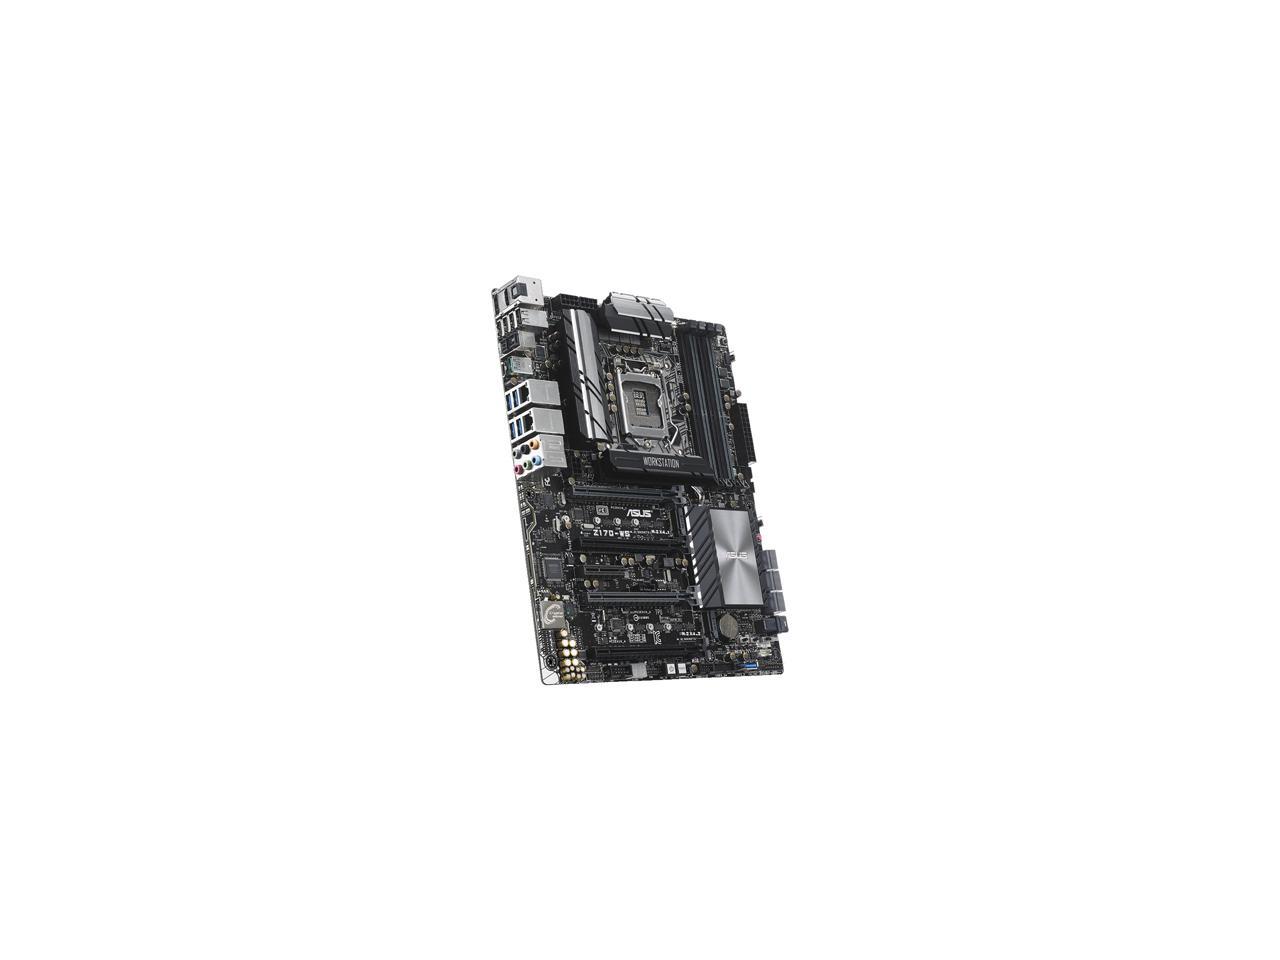 ASUS Z170-WS LGA 1151 Intel Z170 HDMI SATA 6Gb/s USB 3.1 USB 3.0 ATX Intel Motherboard